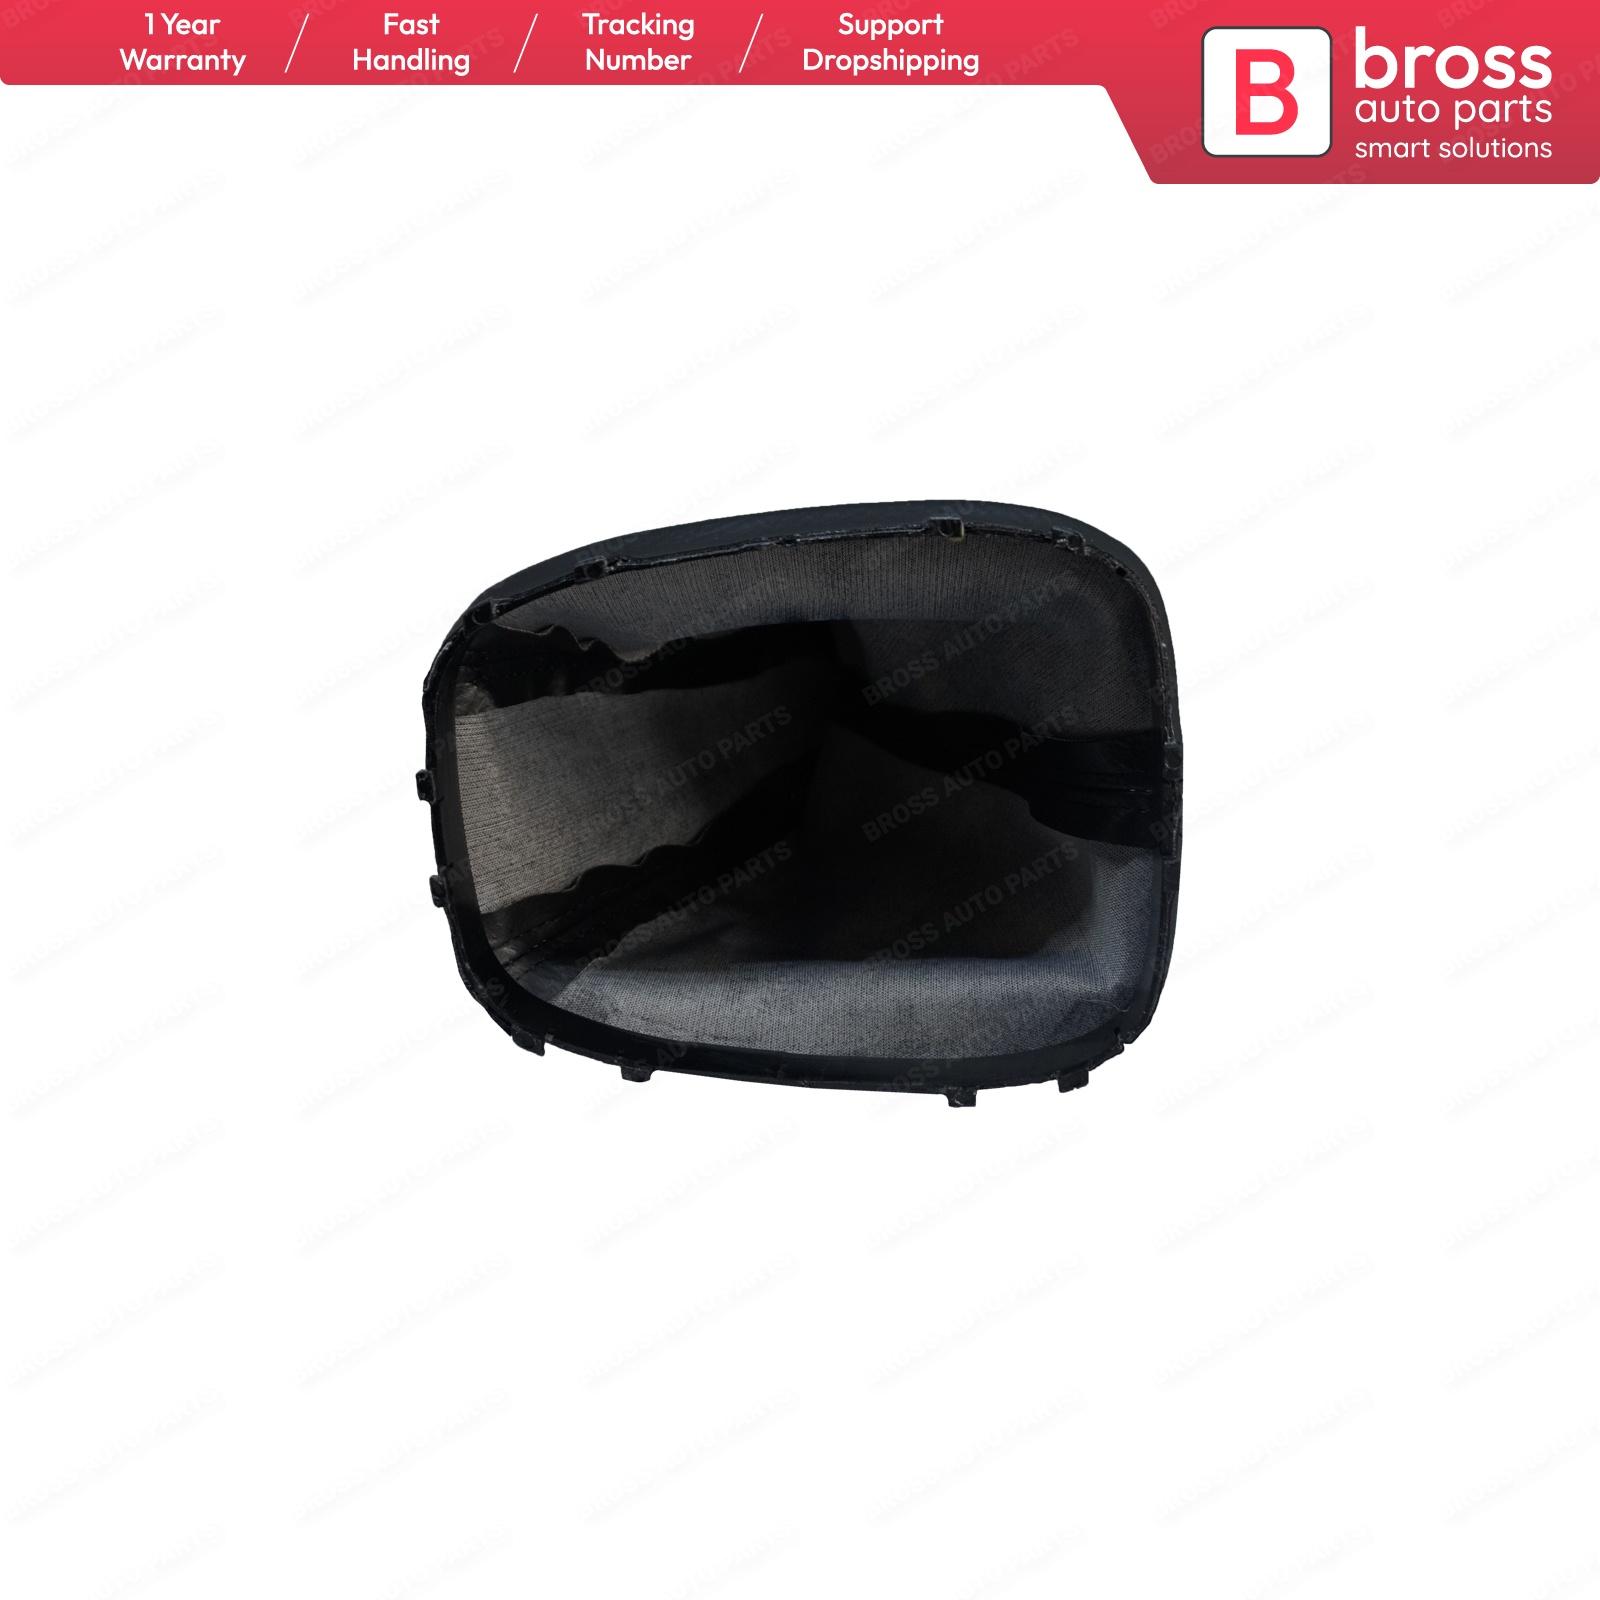 Изображение товара: Ручной рычаг переключения передач Bross BSP781, черные чехлы 5738056, 55557718 для Opel Corsa D 2006-2014, Сделано в Турции